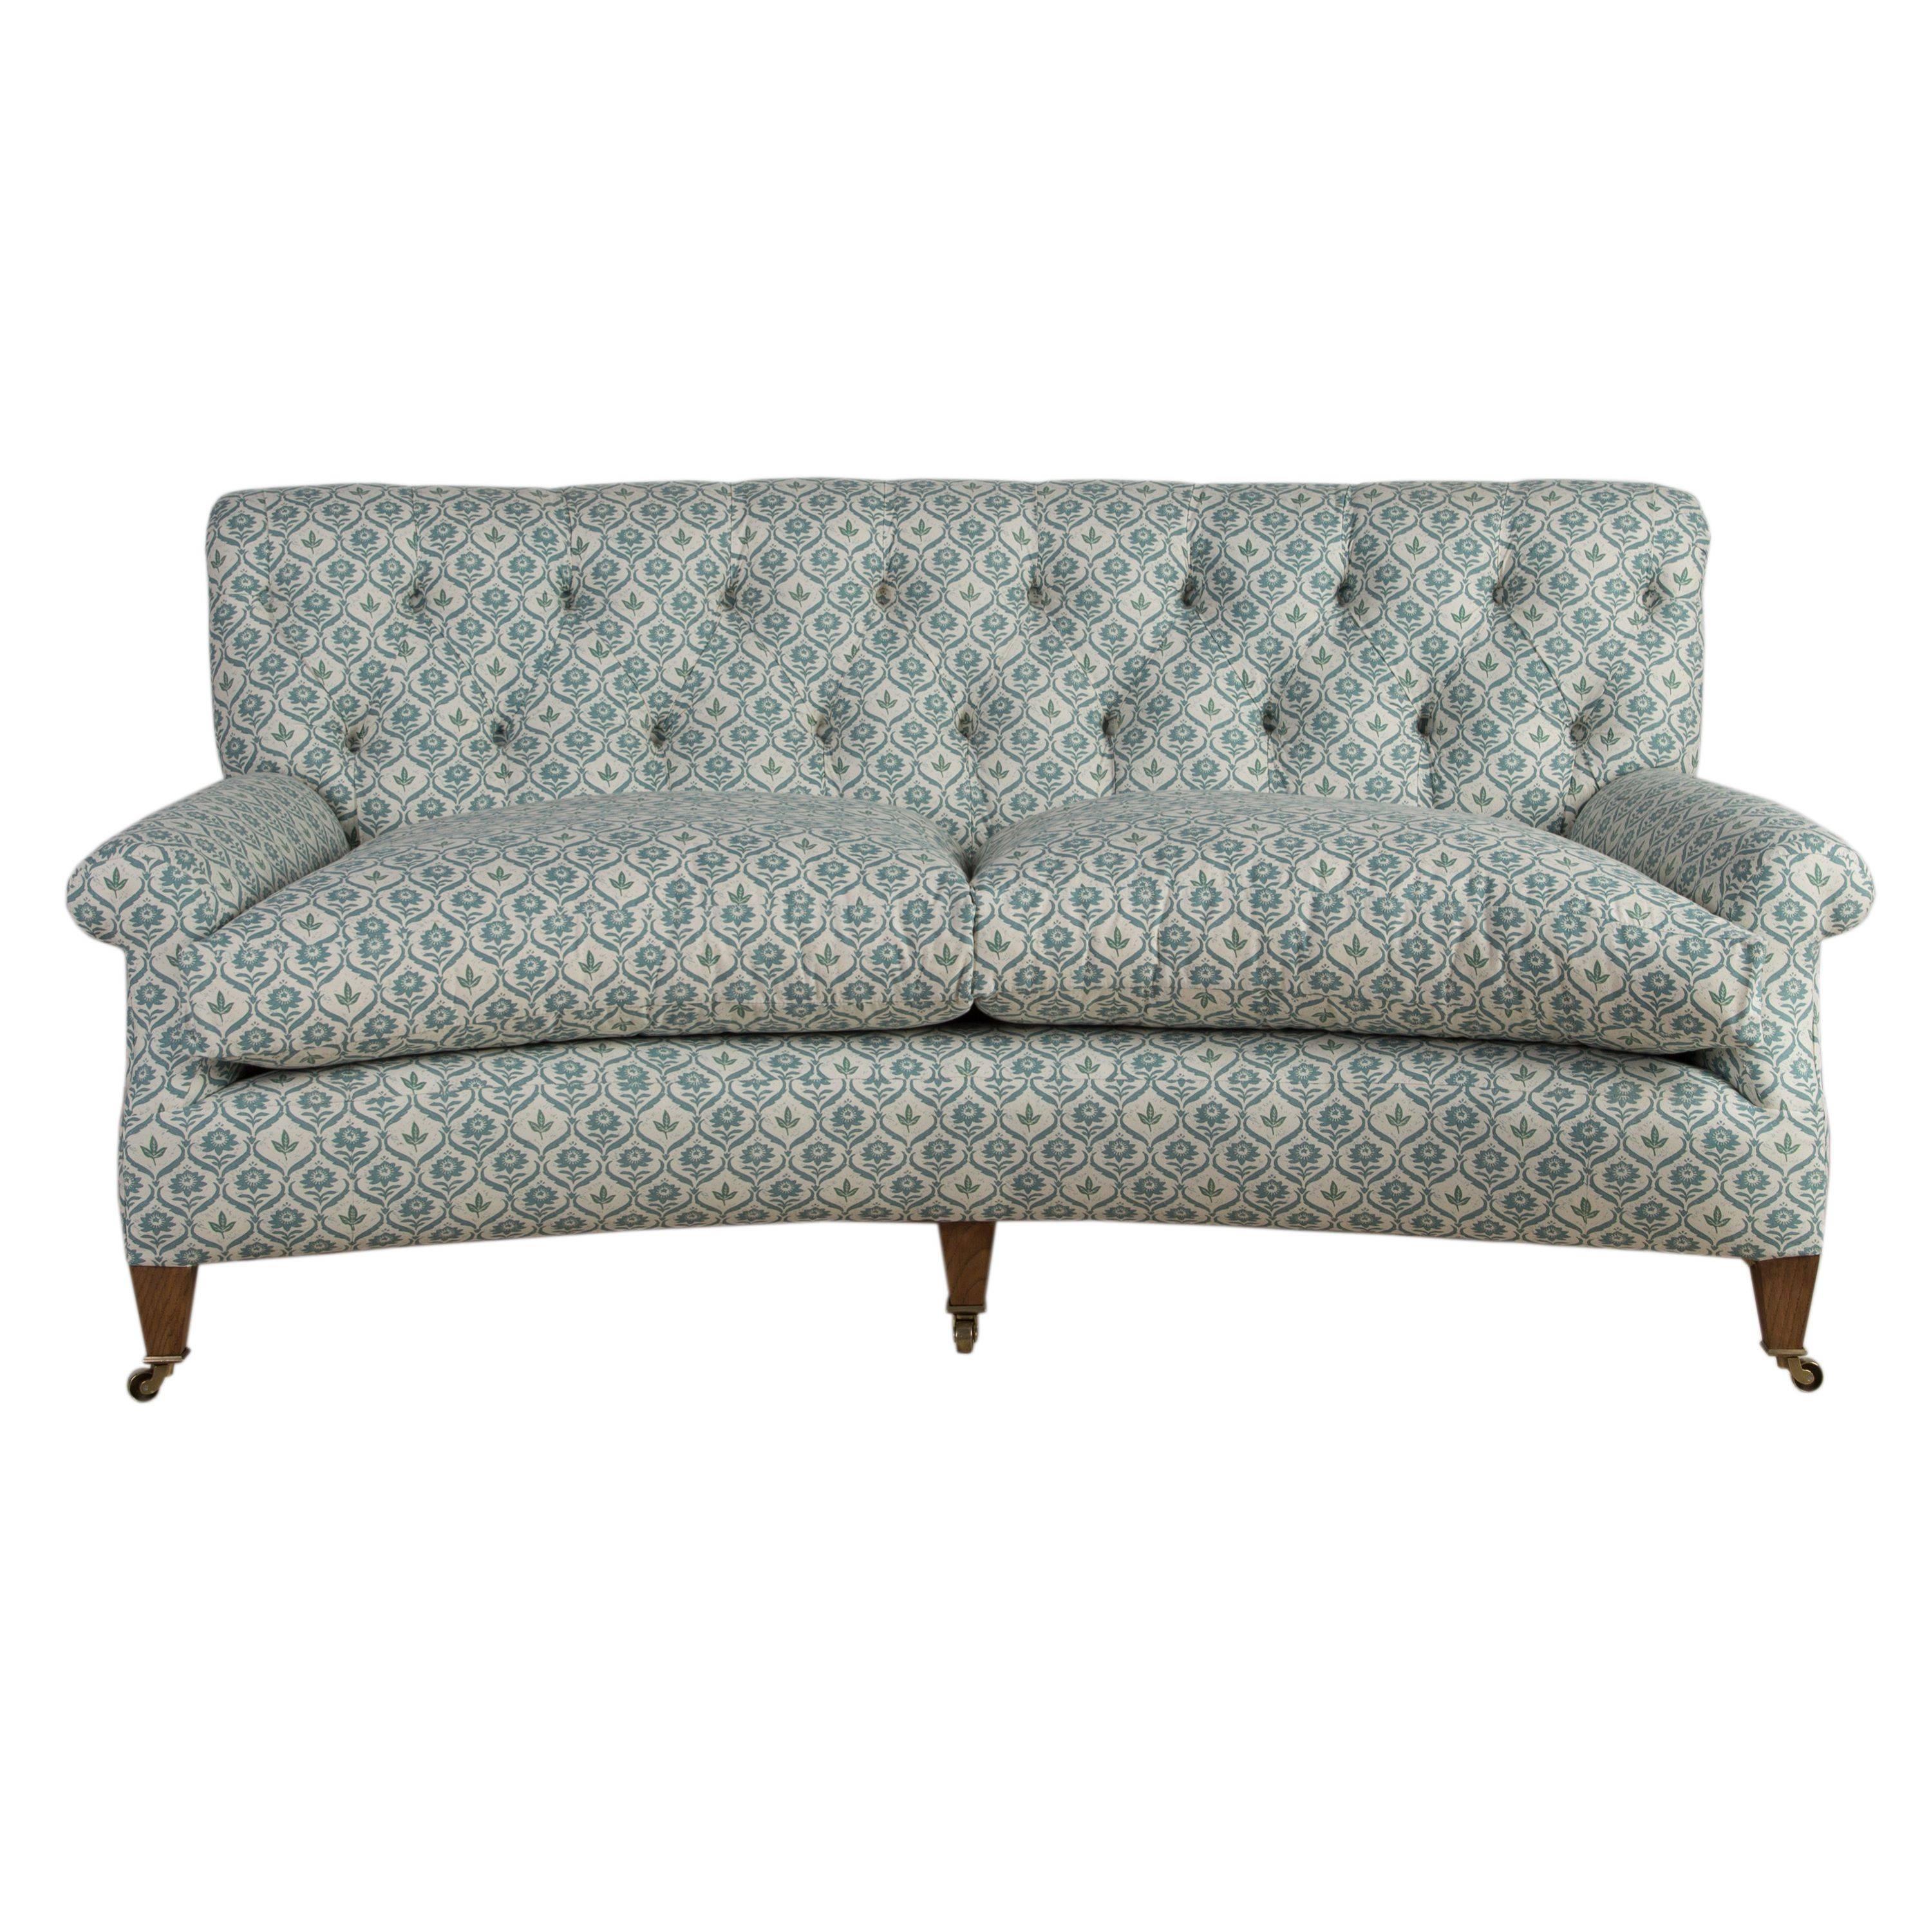 The Fitzrovia Sofa For Sale